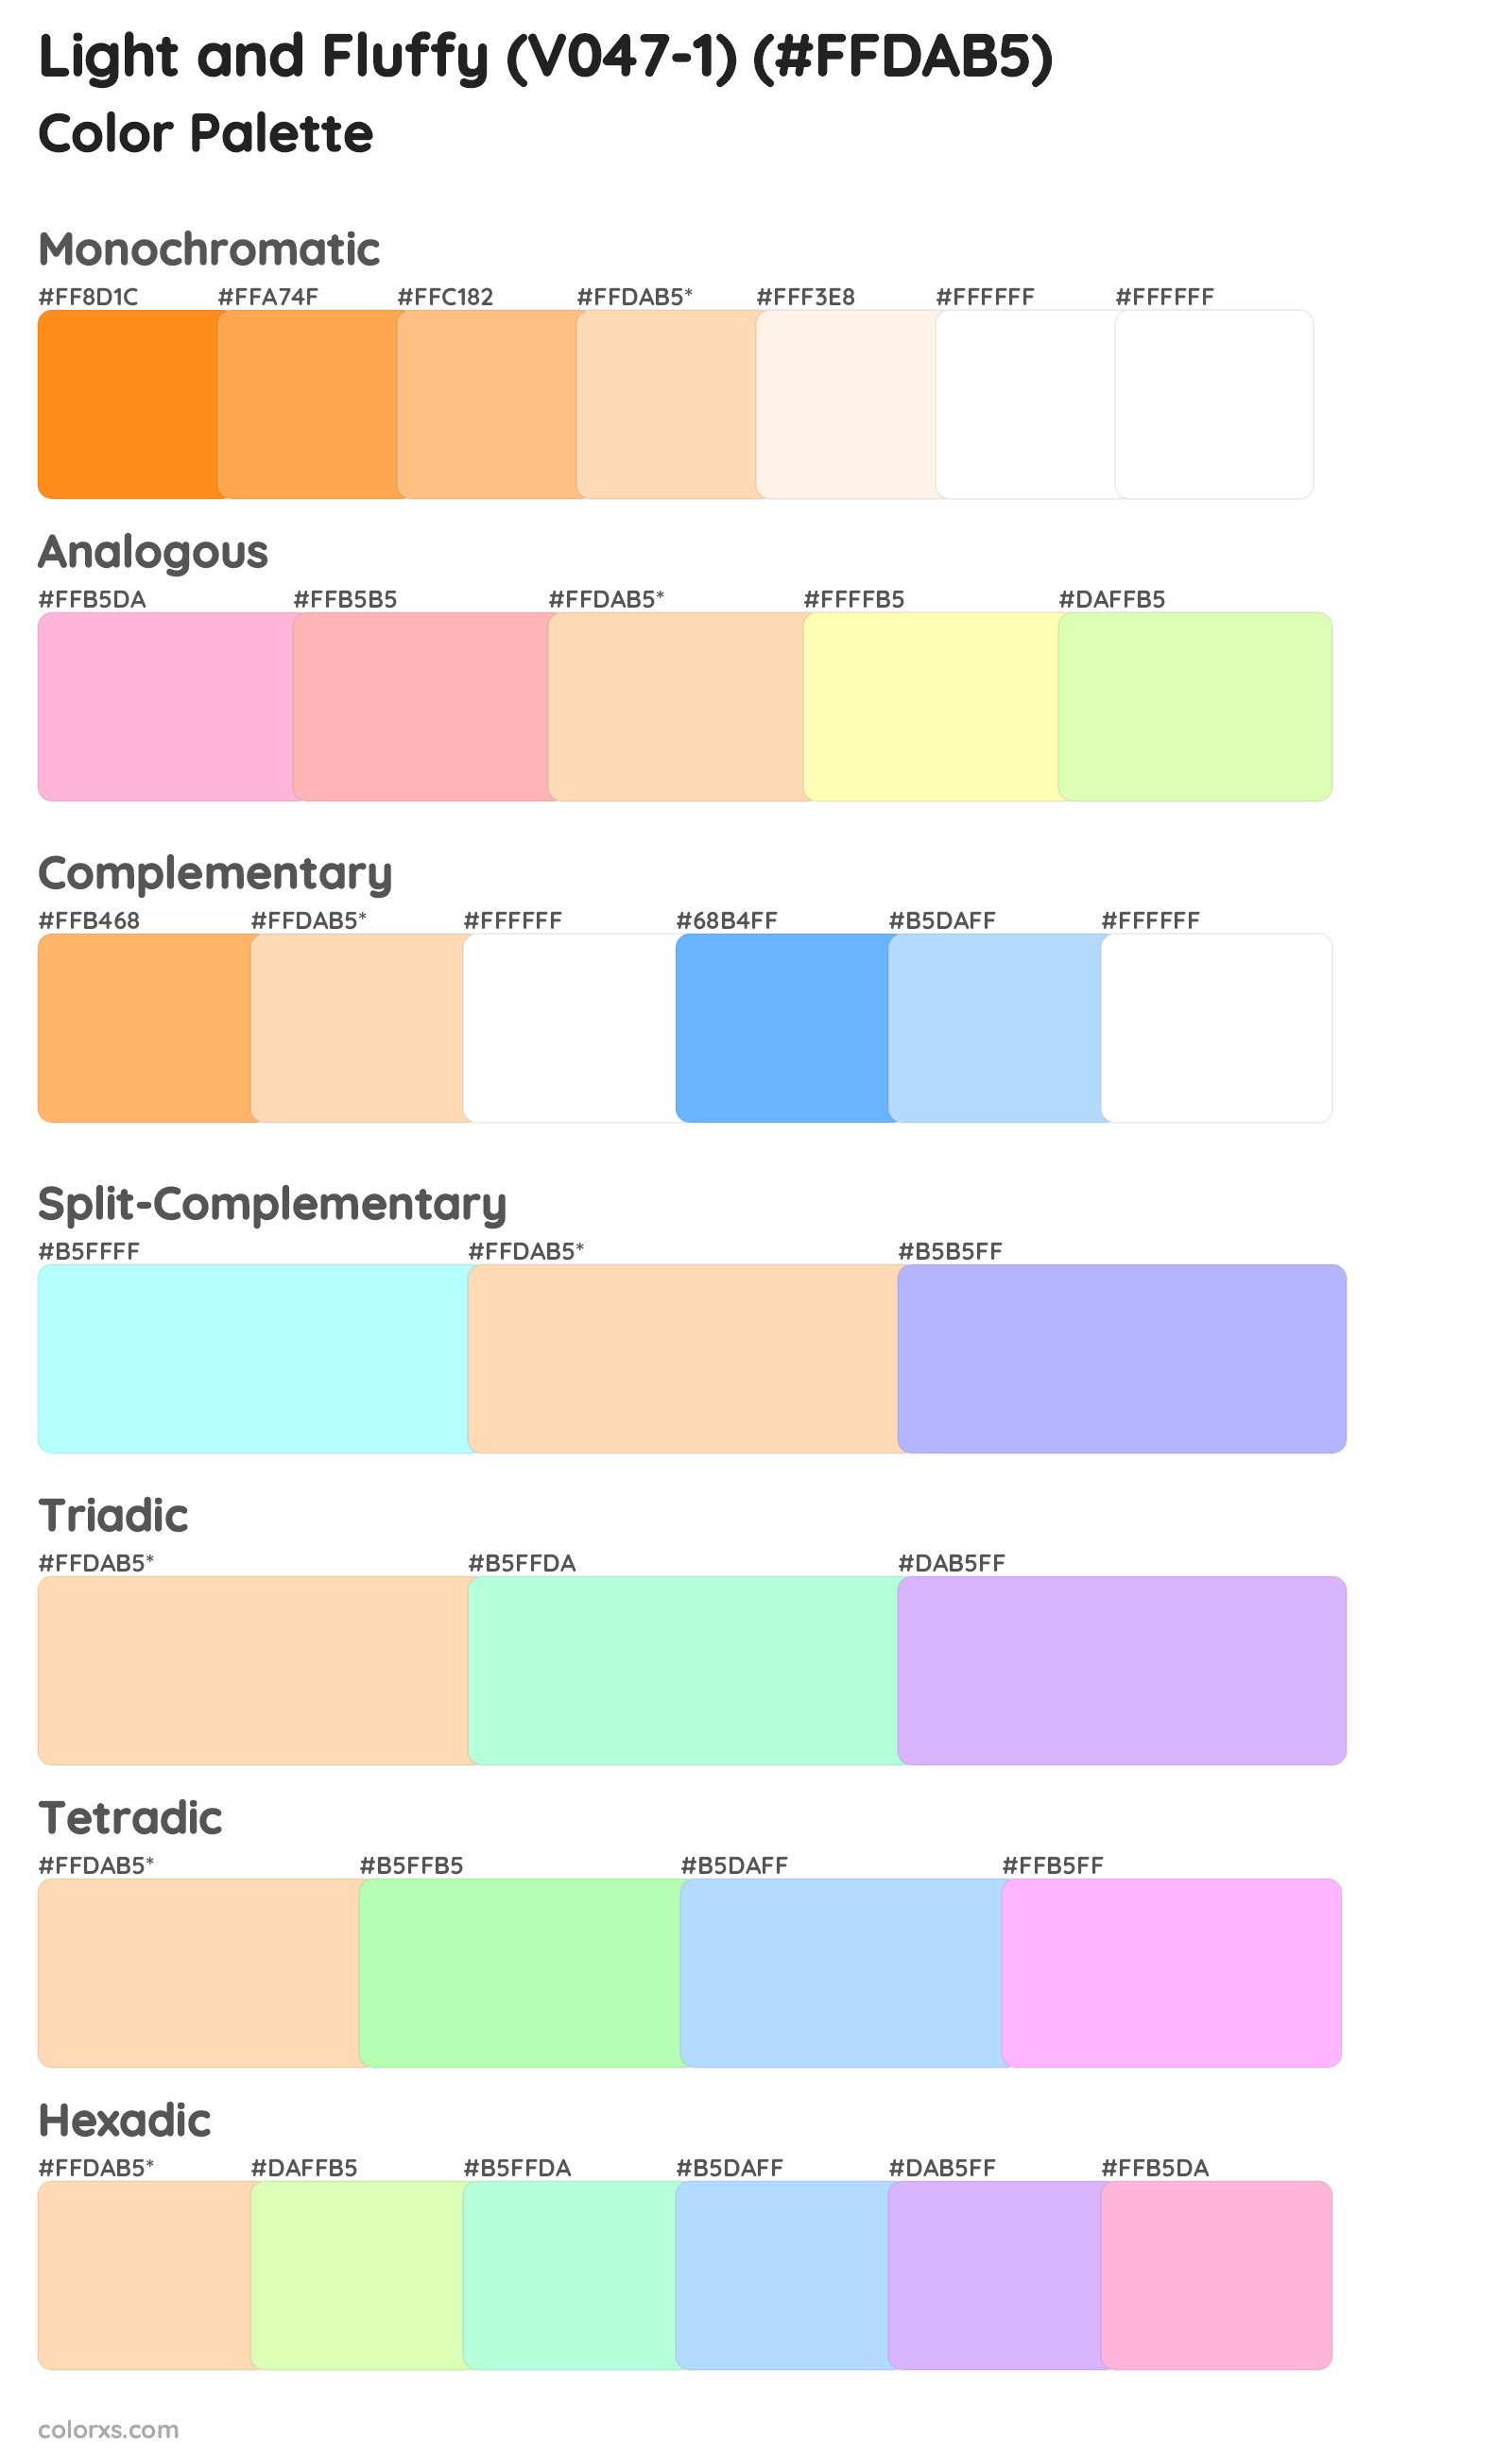 Light and Fluffy (V047-1) Color Scheme Palettes